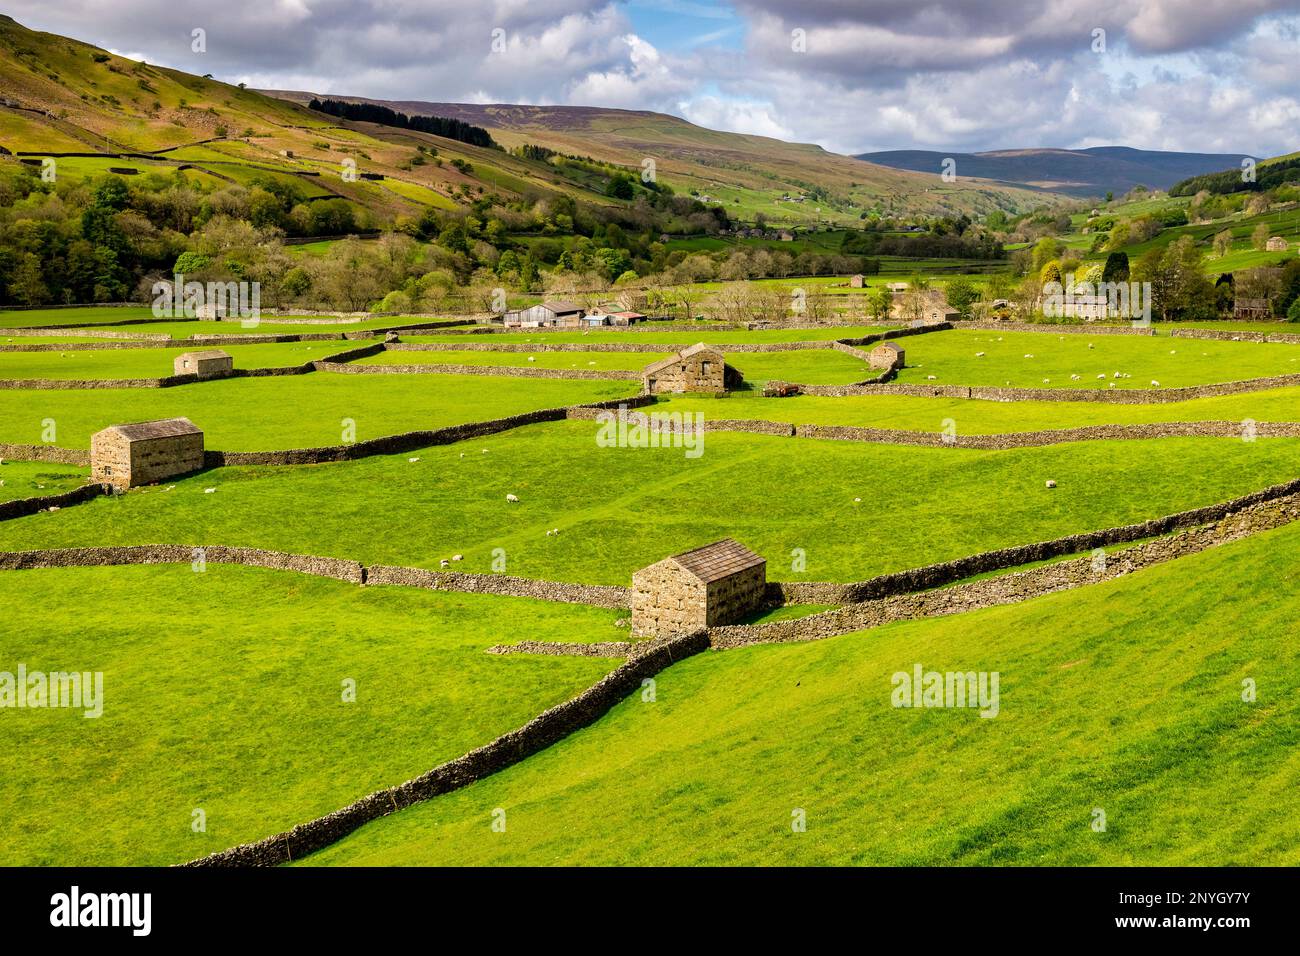 Tipico paesaggio delle valli dello Yorkshire a Swaledale, con fienili, pecore e muri di pietra a secco. Foto Stock